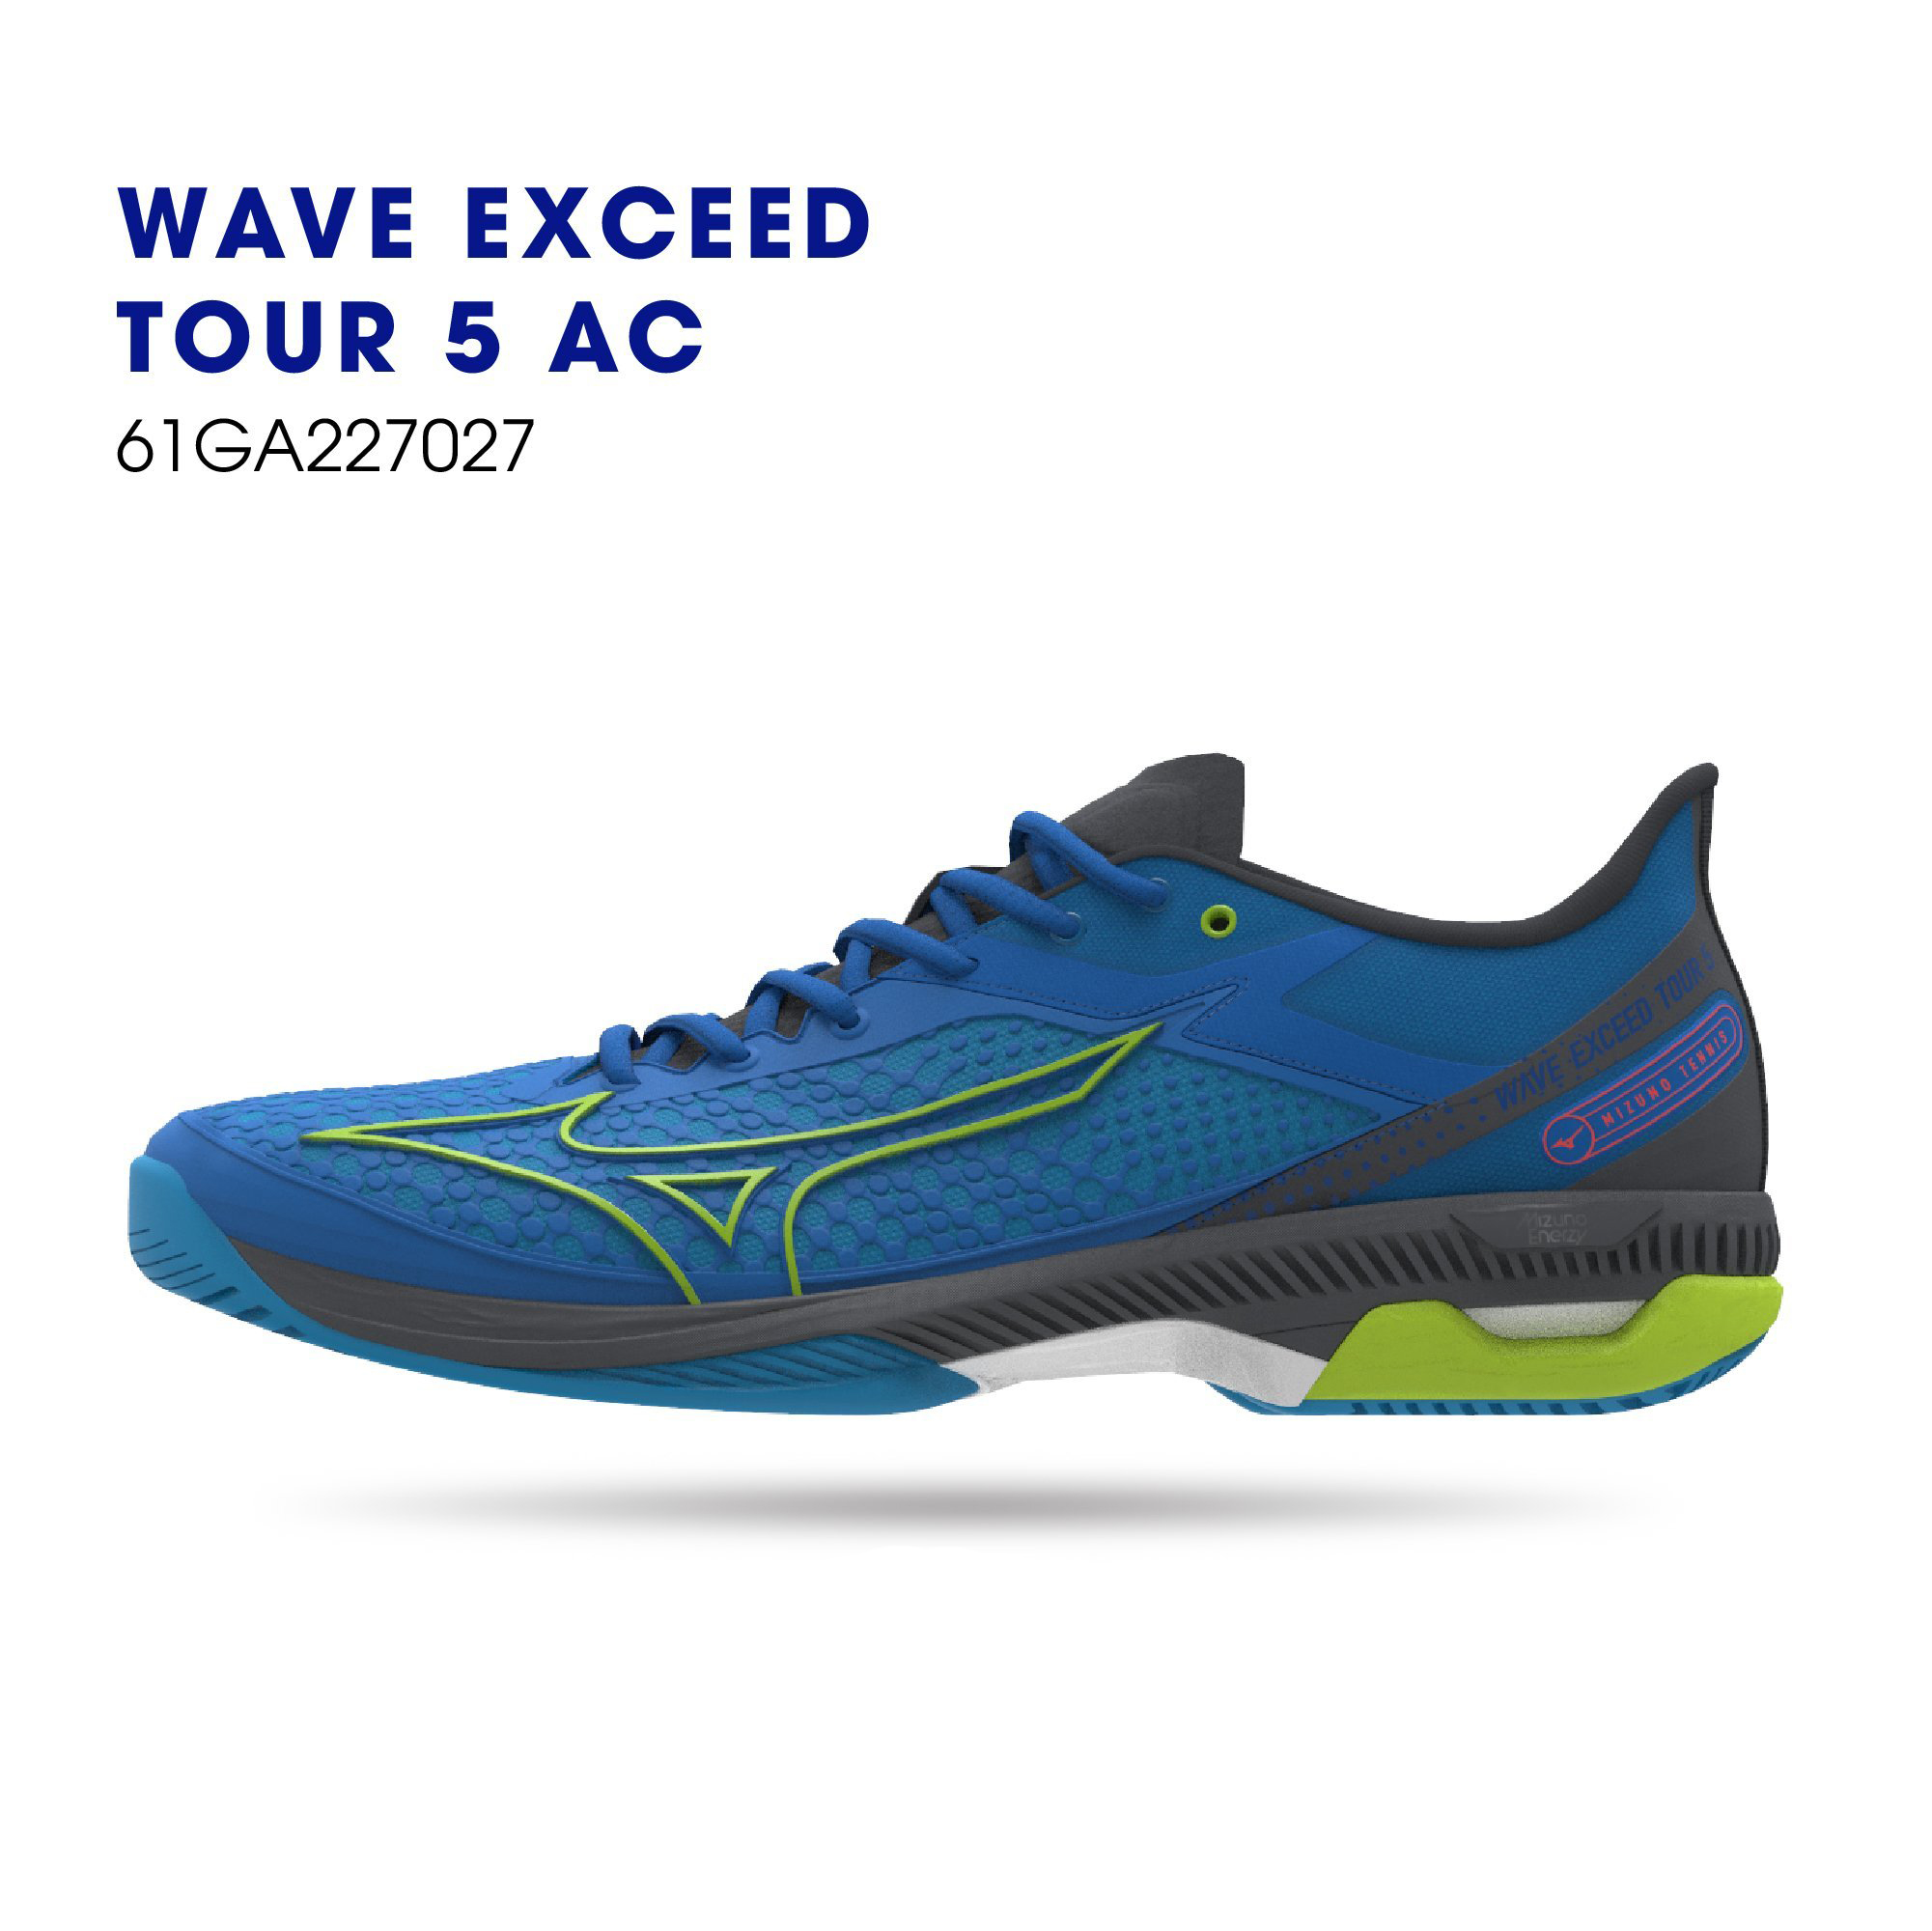 Giày tennis Mizuno chính hãng Wave Exceed tourd 5 AC chính hãng dành cho